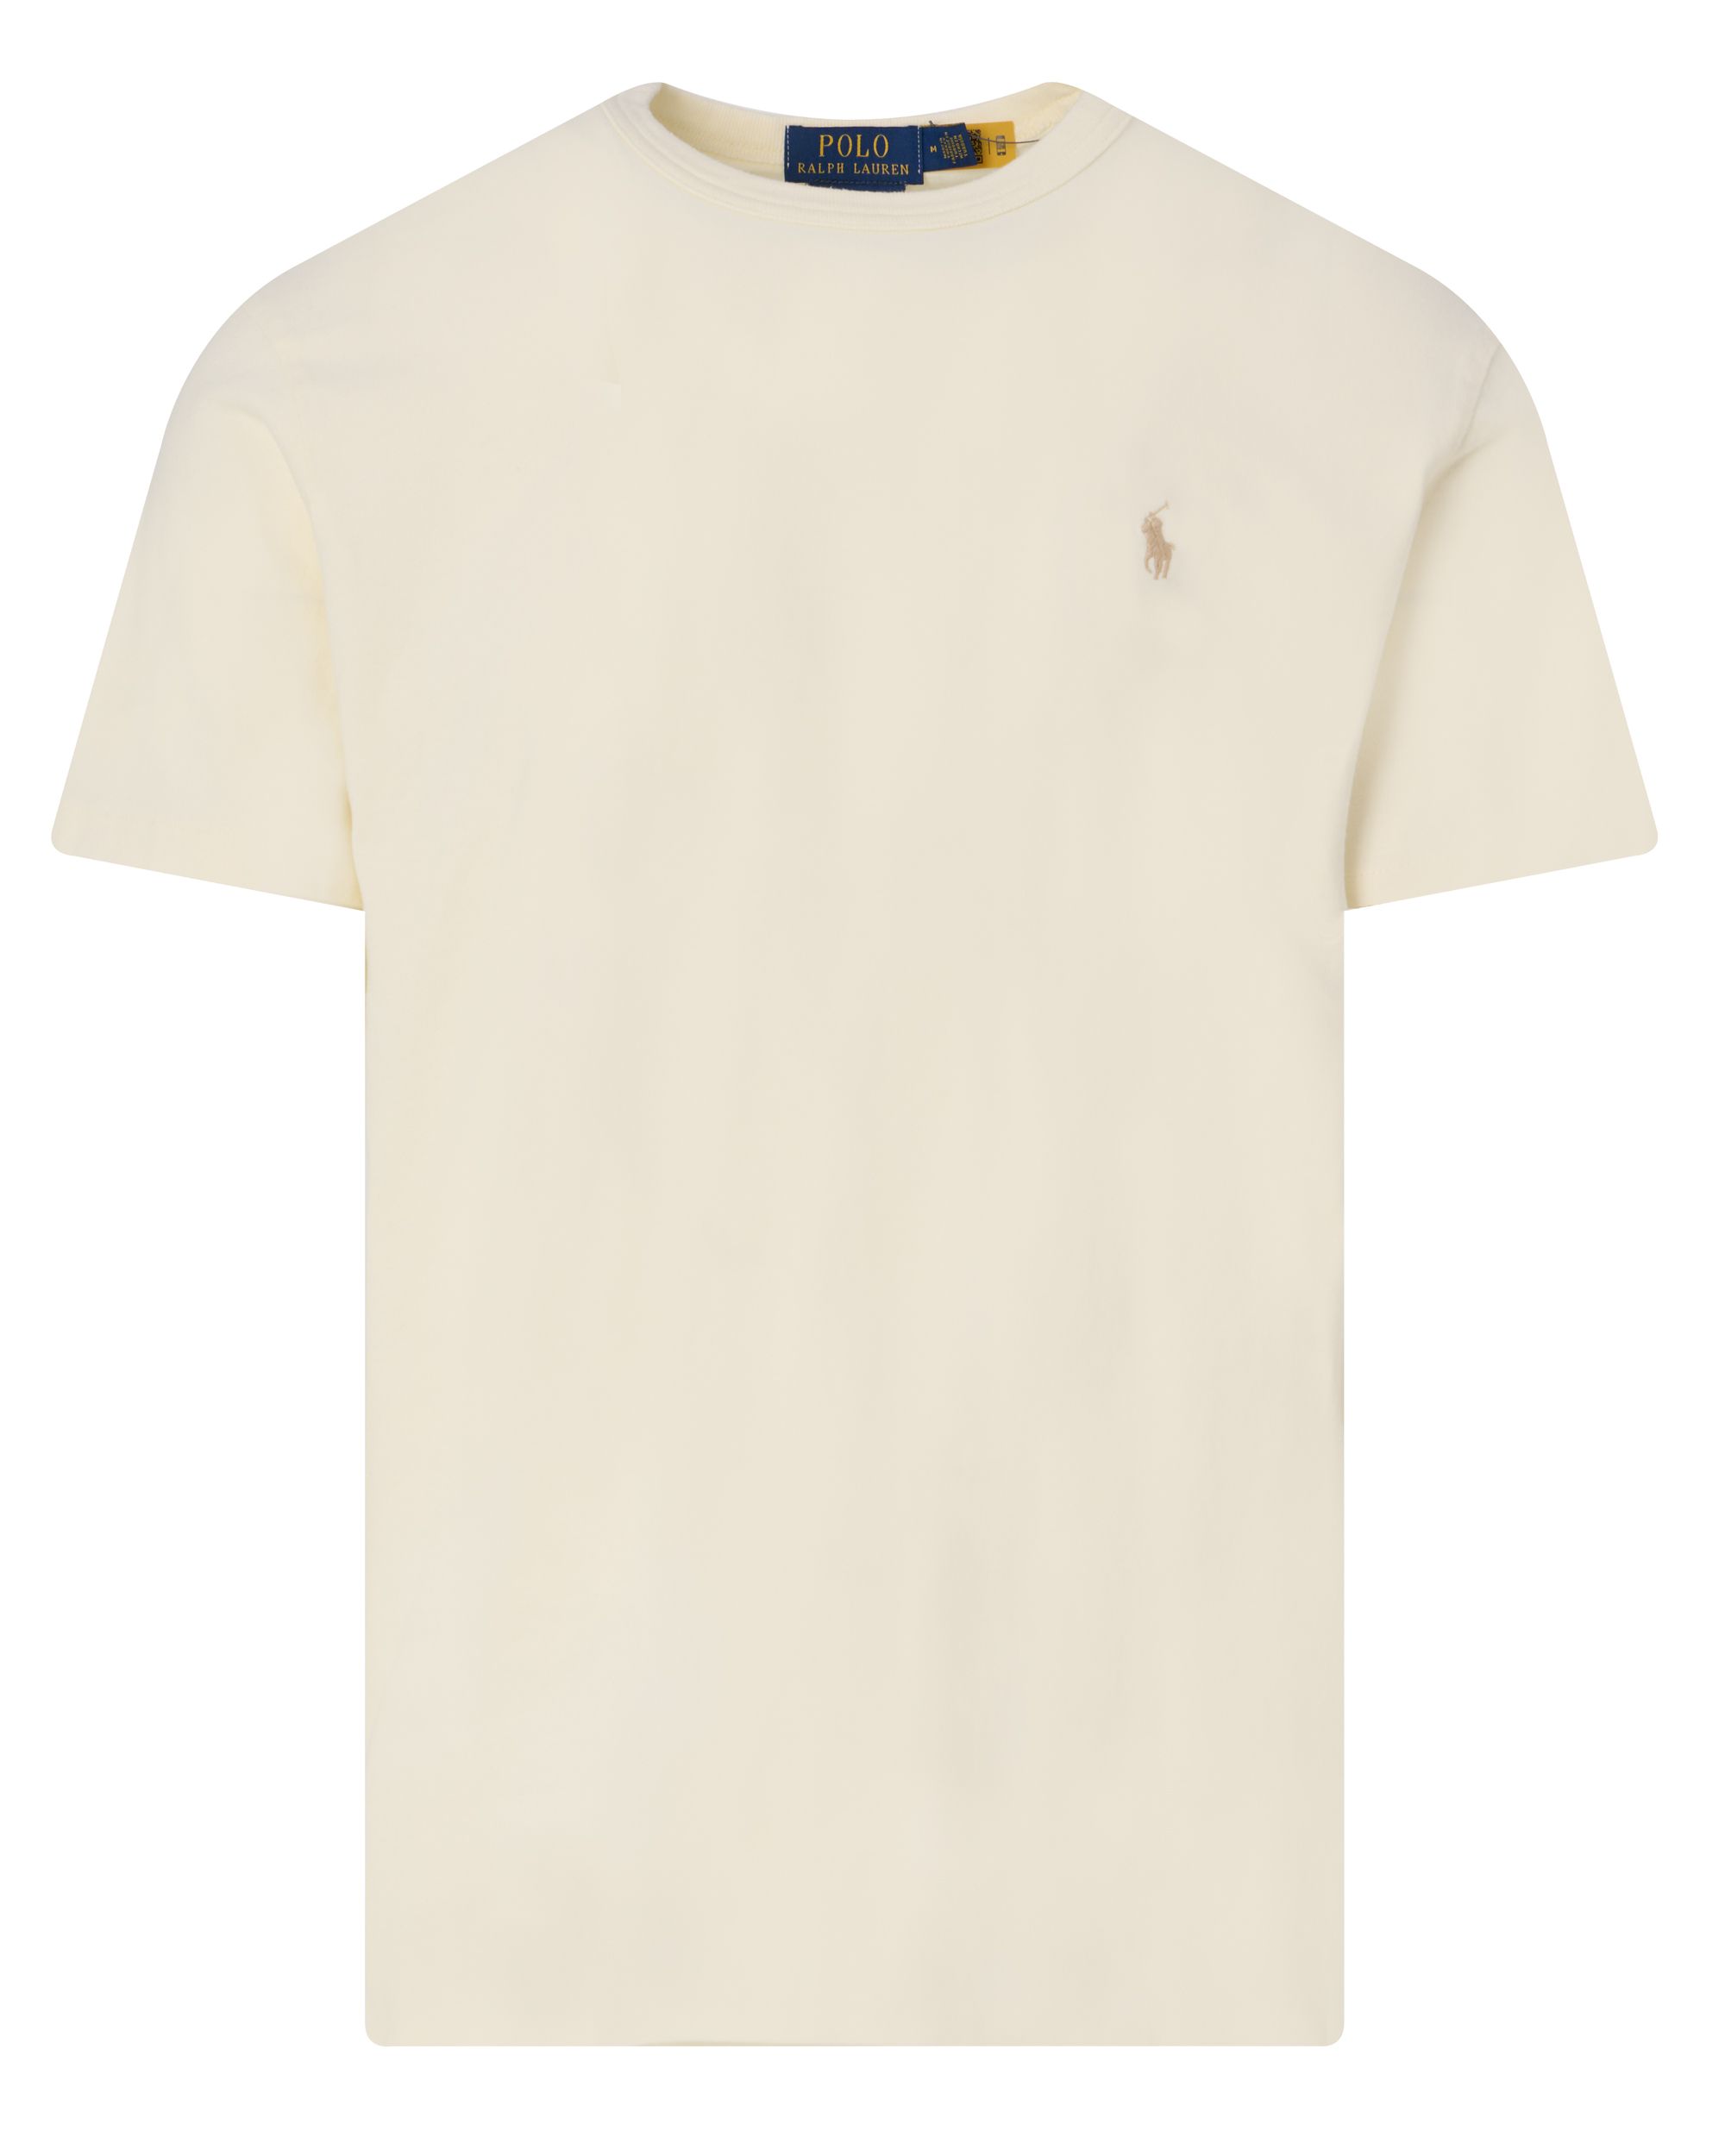 Polo Ralph Lauren T-shirt KM Ecru 095323-001-L